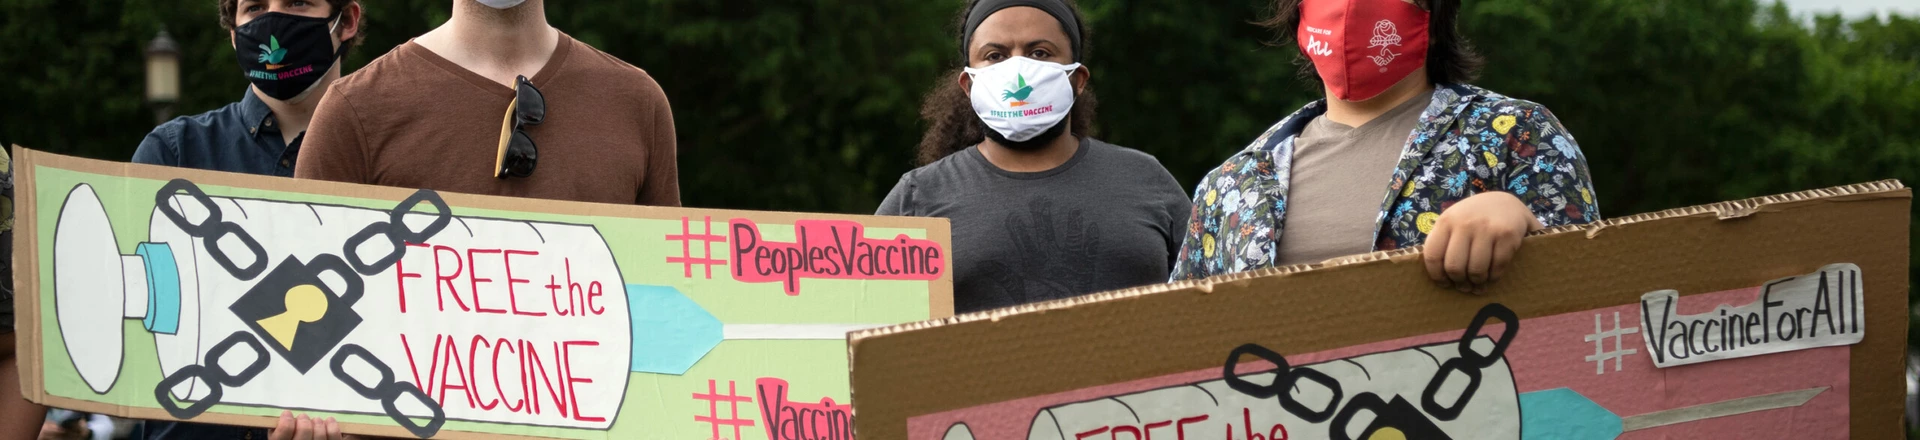 Ativistas exigem acesso global e equitativo à vacina contra a covid-19 no National Mall em Washington, EUA, em 5 de maio de 2021. Foto: Caroline Brehman/Getty Images